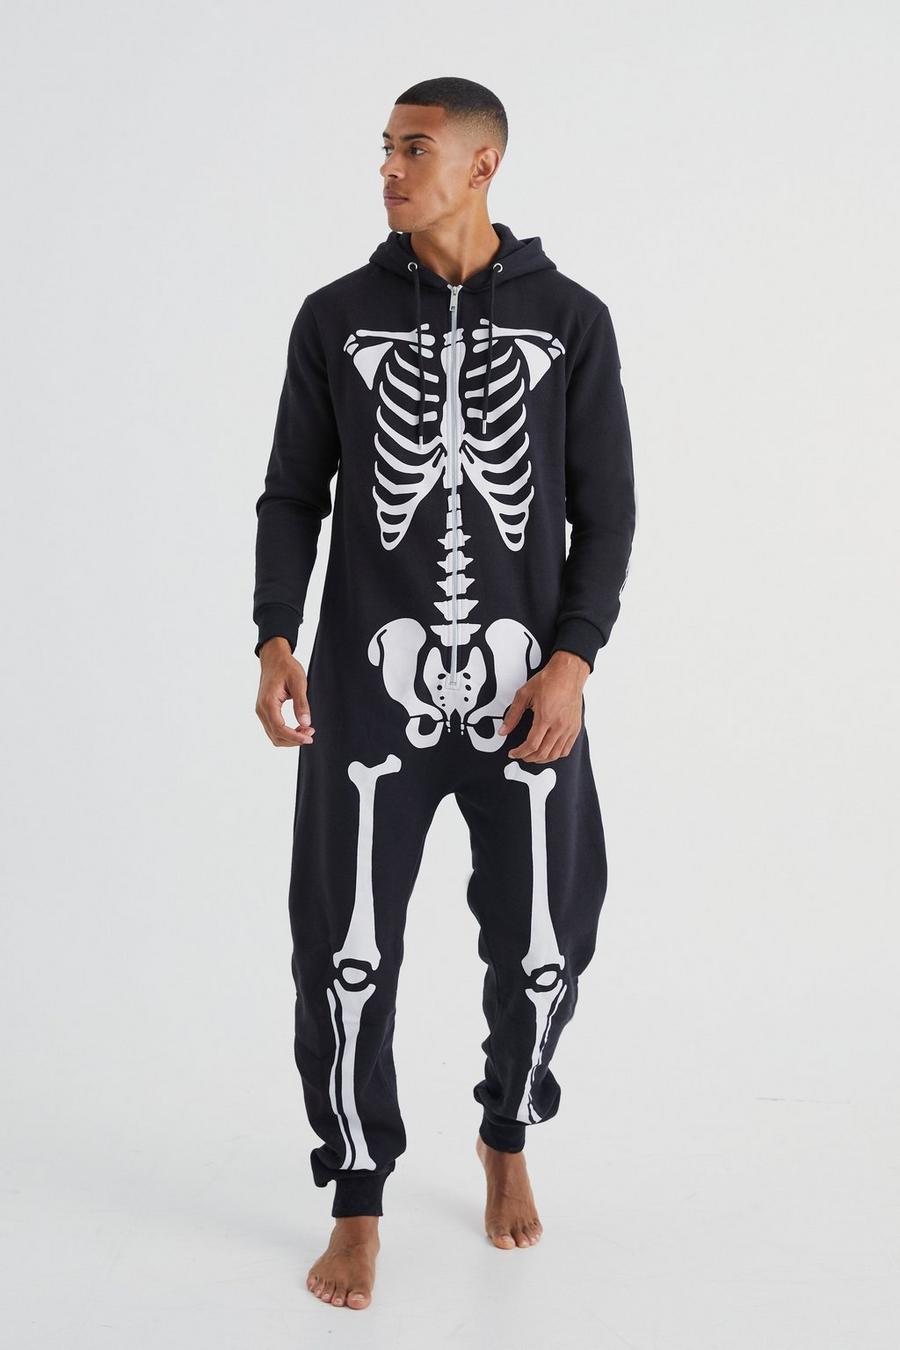 Pijama enterizo negro con esqueleto, Black